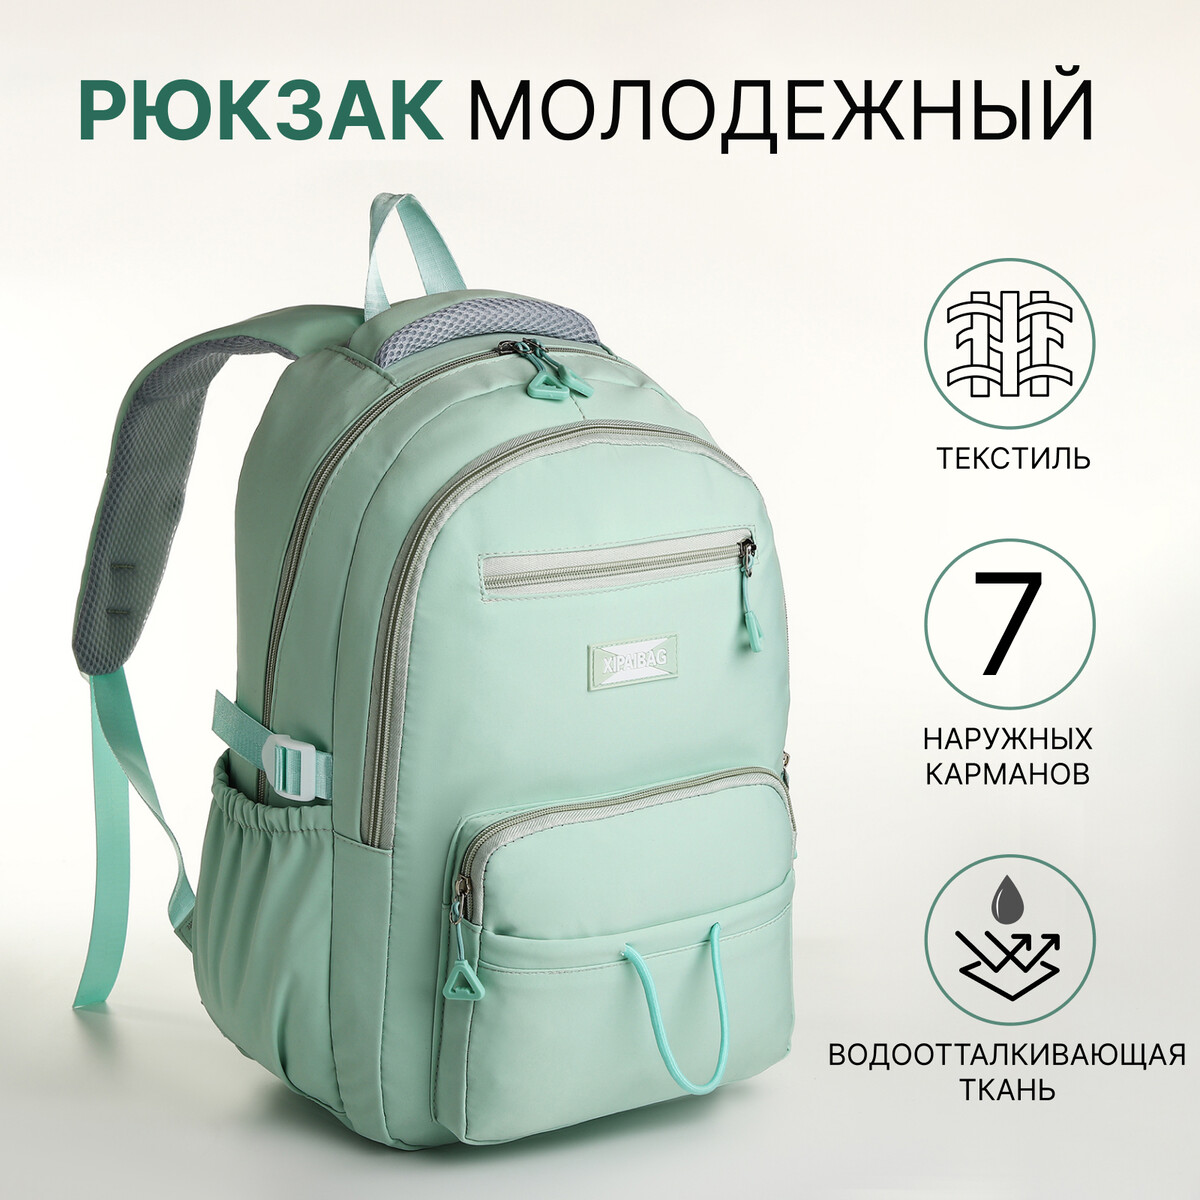 Рюкзак школьный из текстиля на молнии, 7 карманов, цвет зеленый рюкзак школьный из текстиля на молнии 6 карманов